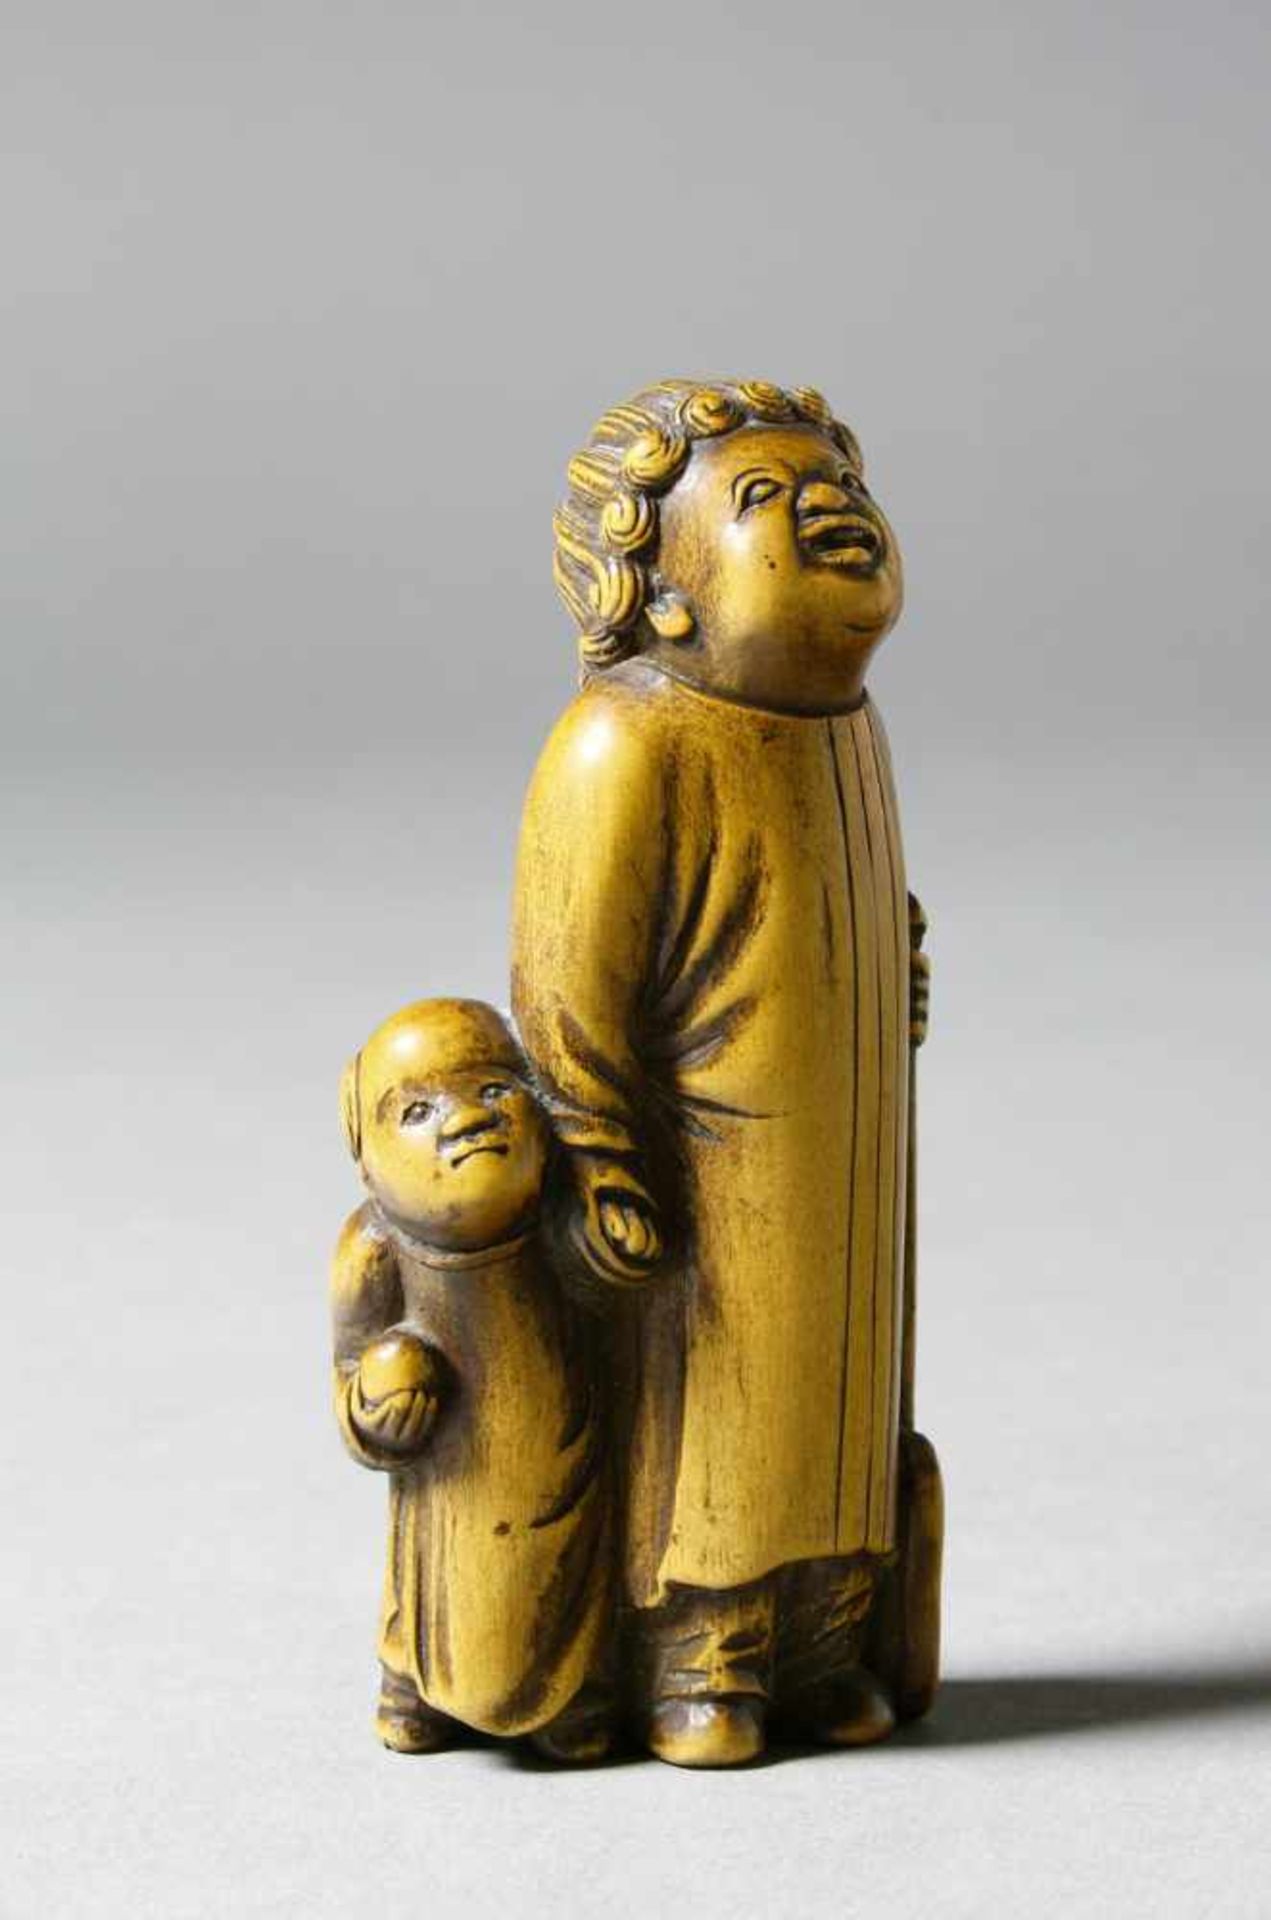 Japan, Netsuke, helles Holz, 19. Jh. Stehender Europäer mit Kind und Spaten. H.: 7,8 cm.